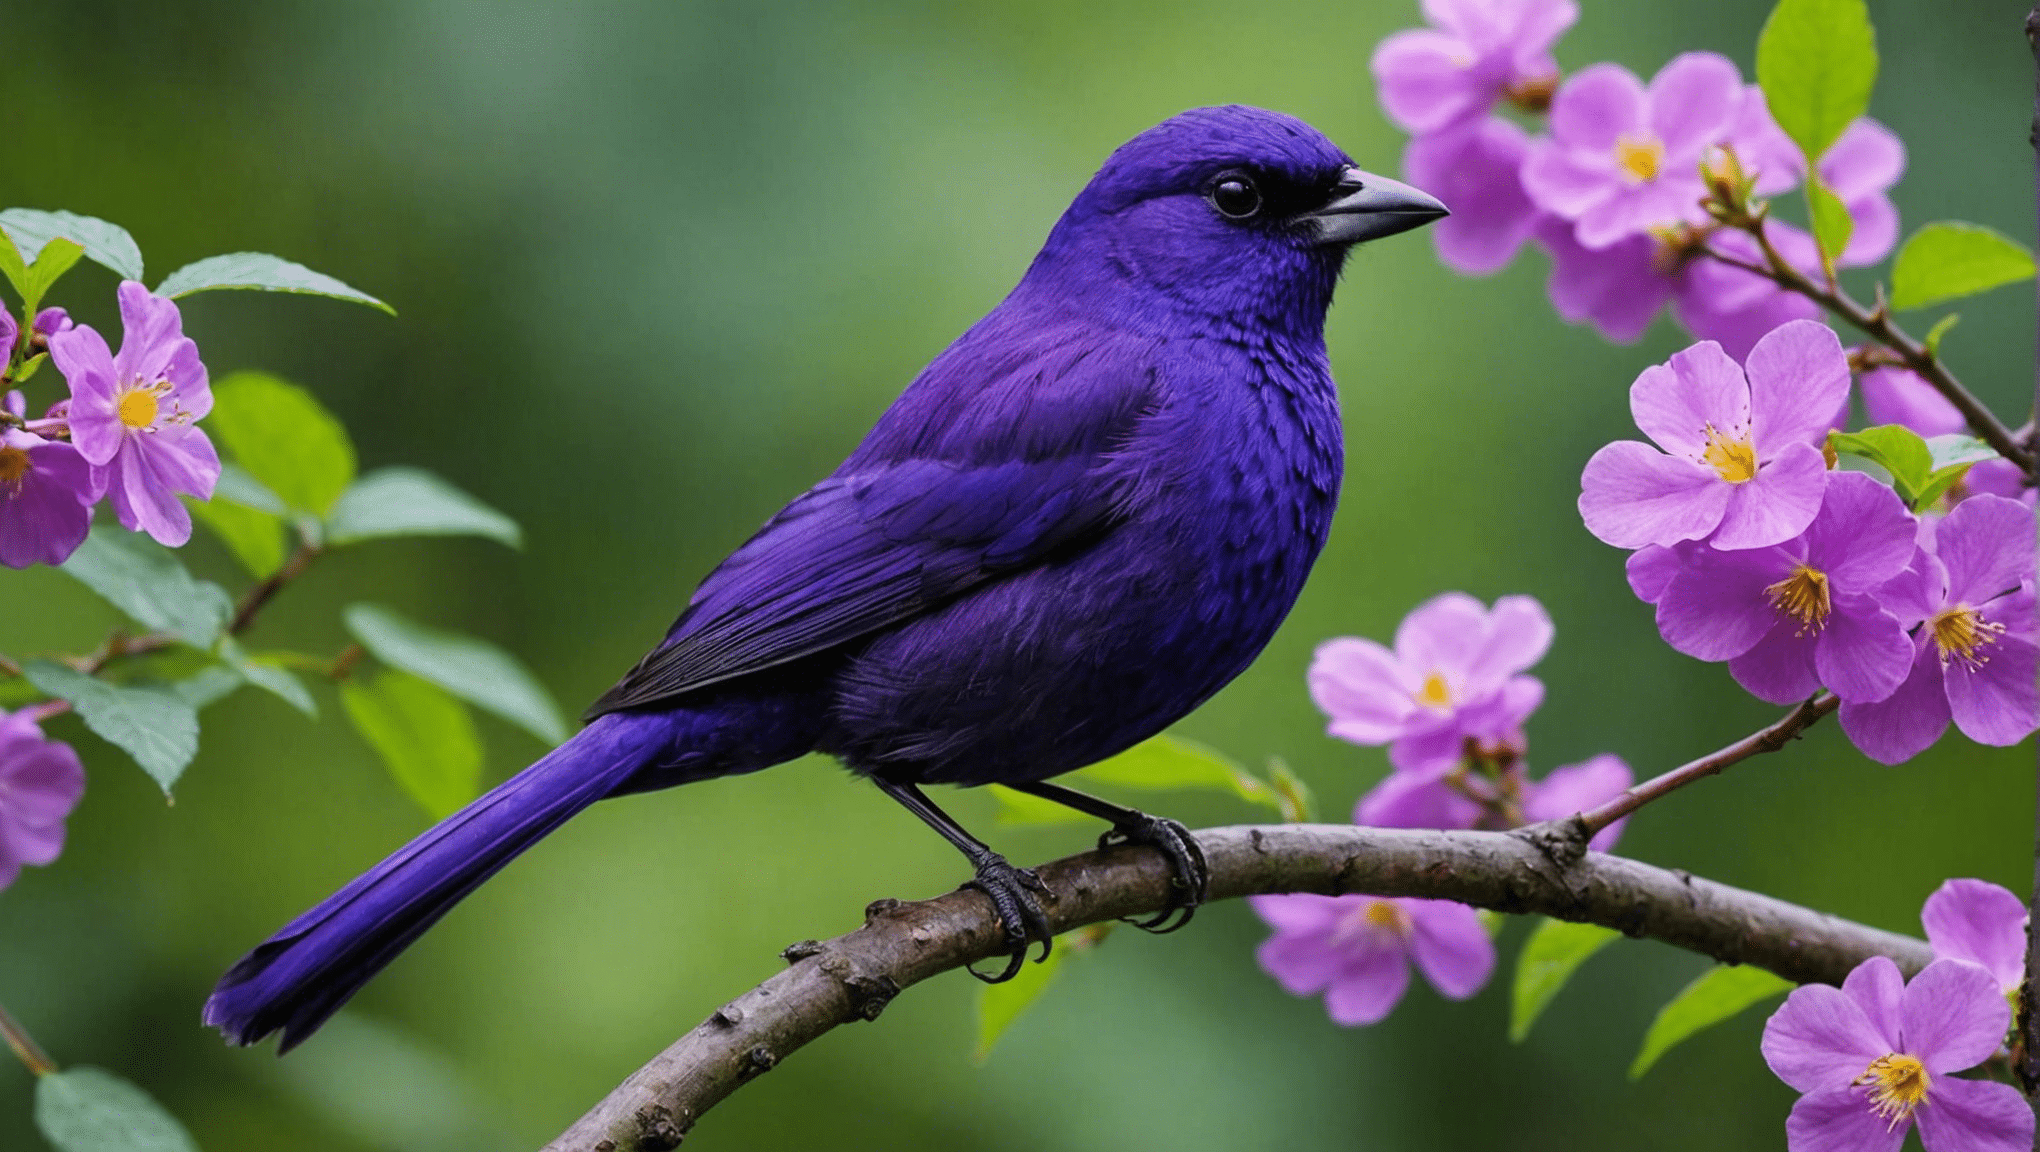 גלה אם ציפורים סגולות נדירות במאמר אינפורמטיבי זה על מיני עופות וצבעיהם הייחודיים.